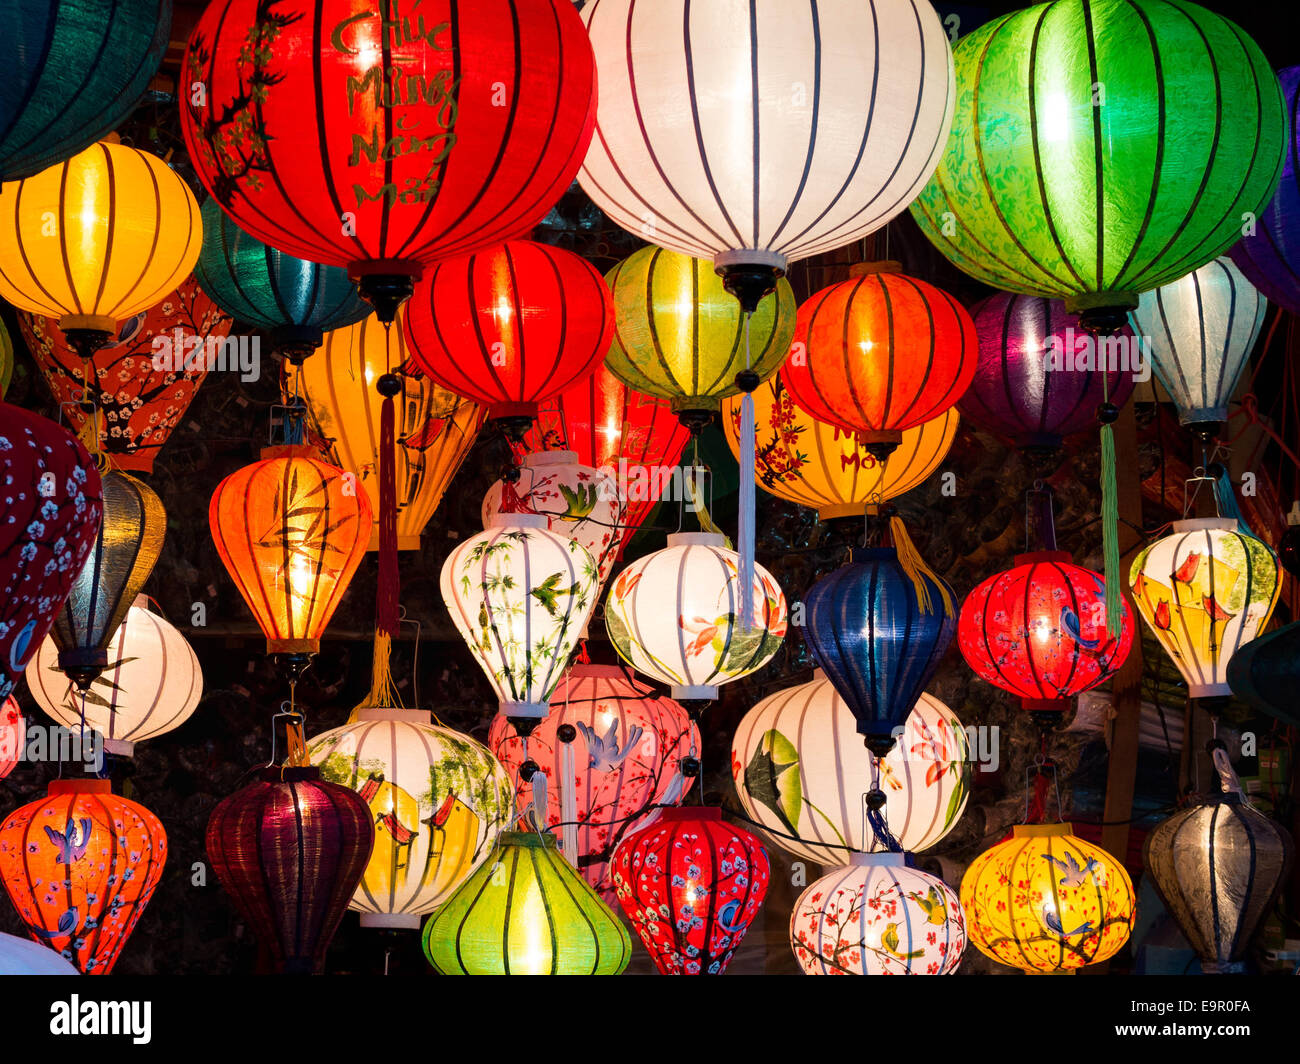 Las lámparas tradicionales en el Old Town tienda en Hoi An, Vietnam. Foto de stock